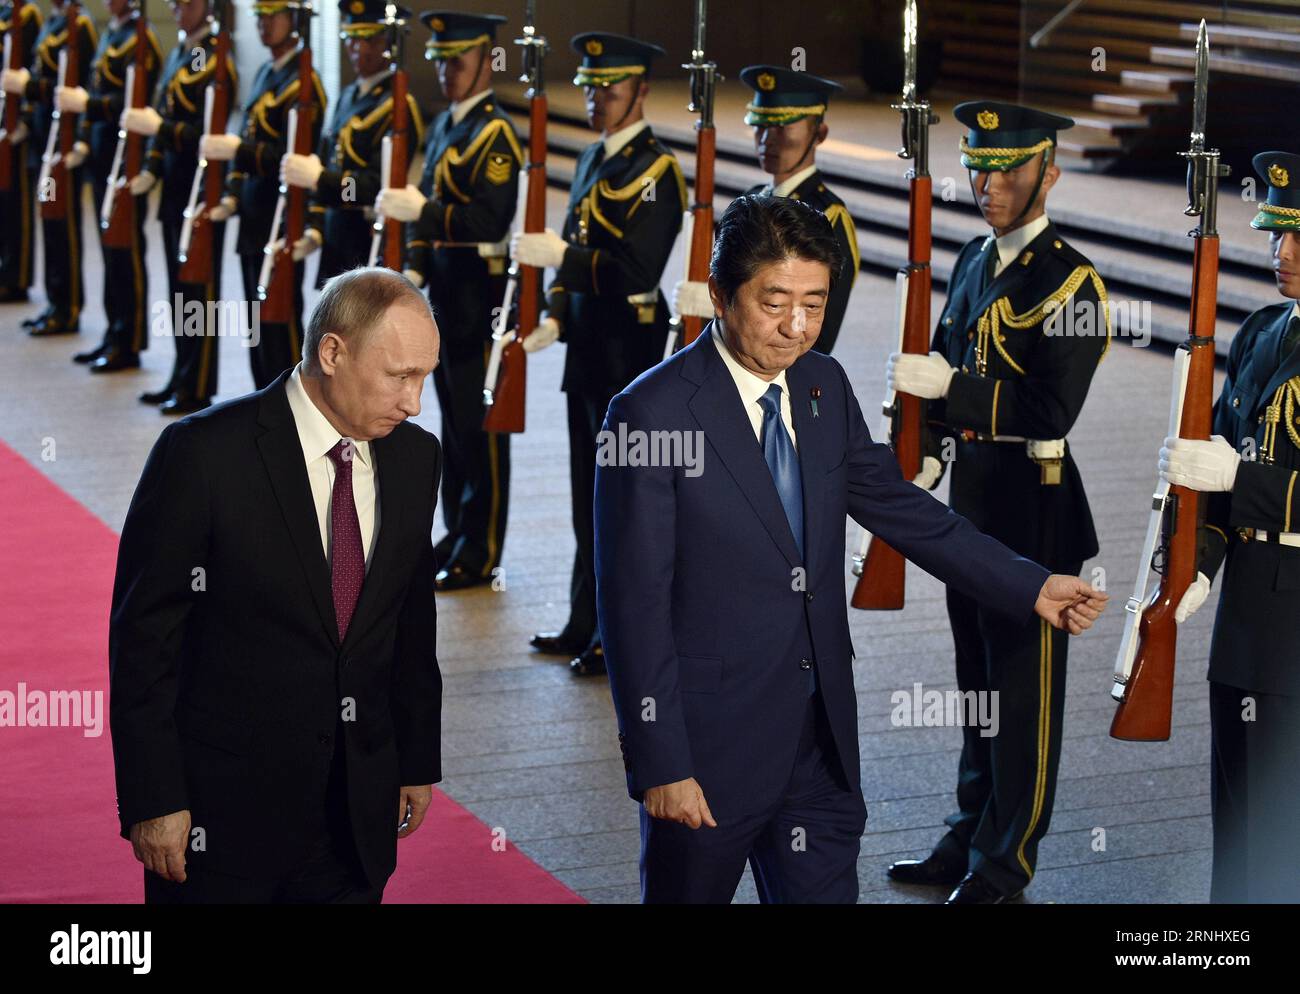 (161216) -- TOKIO, 16. Dezember 2016 () -- der russische Präsident Wladimir Putin (1., L) und der japanische Premierminister Shinzo Abe (2., L) überprüfen einen Ehrenwächter in Abes offiziellem Wohnsitz in Tokio, Japan, 16. Dezember 2016. Der russische Präsident Wladimir Putin sagte am Freitag, dass der Inselstreit zwischen Russland und Japan nicht bald gelöst werden kann. () (cl) JAPAN-TOKIO-RUSSLAND-PUTIN-ABE Xinhua PUBLICATIONxNOTxINxCHN Tokio DEZ 16 2016 russischer Präsident Wladimir Putin 1st l und die japanischen Premierminister Shinzo ABE 2nd l ÜBERPRÜFUNG zur EHRENGARDE in DER offiziellen ABE-Residenz in Tokio Japan DEZ 16 2016 russischer Präsident Wladim Stockfoto